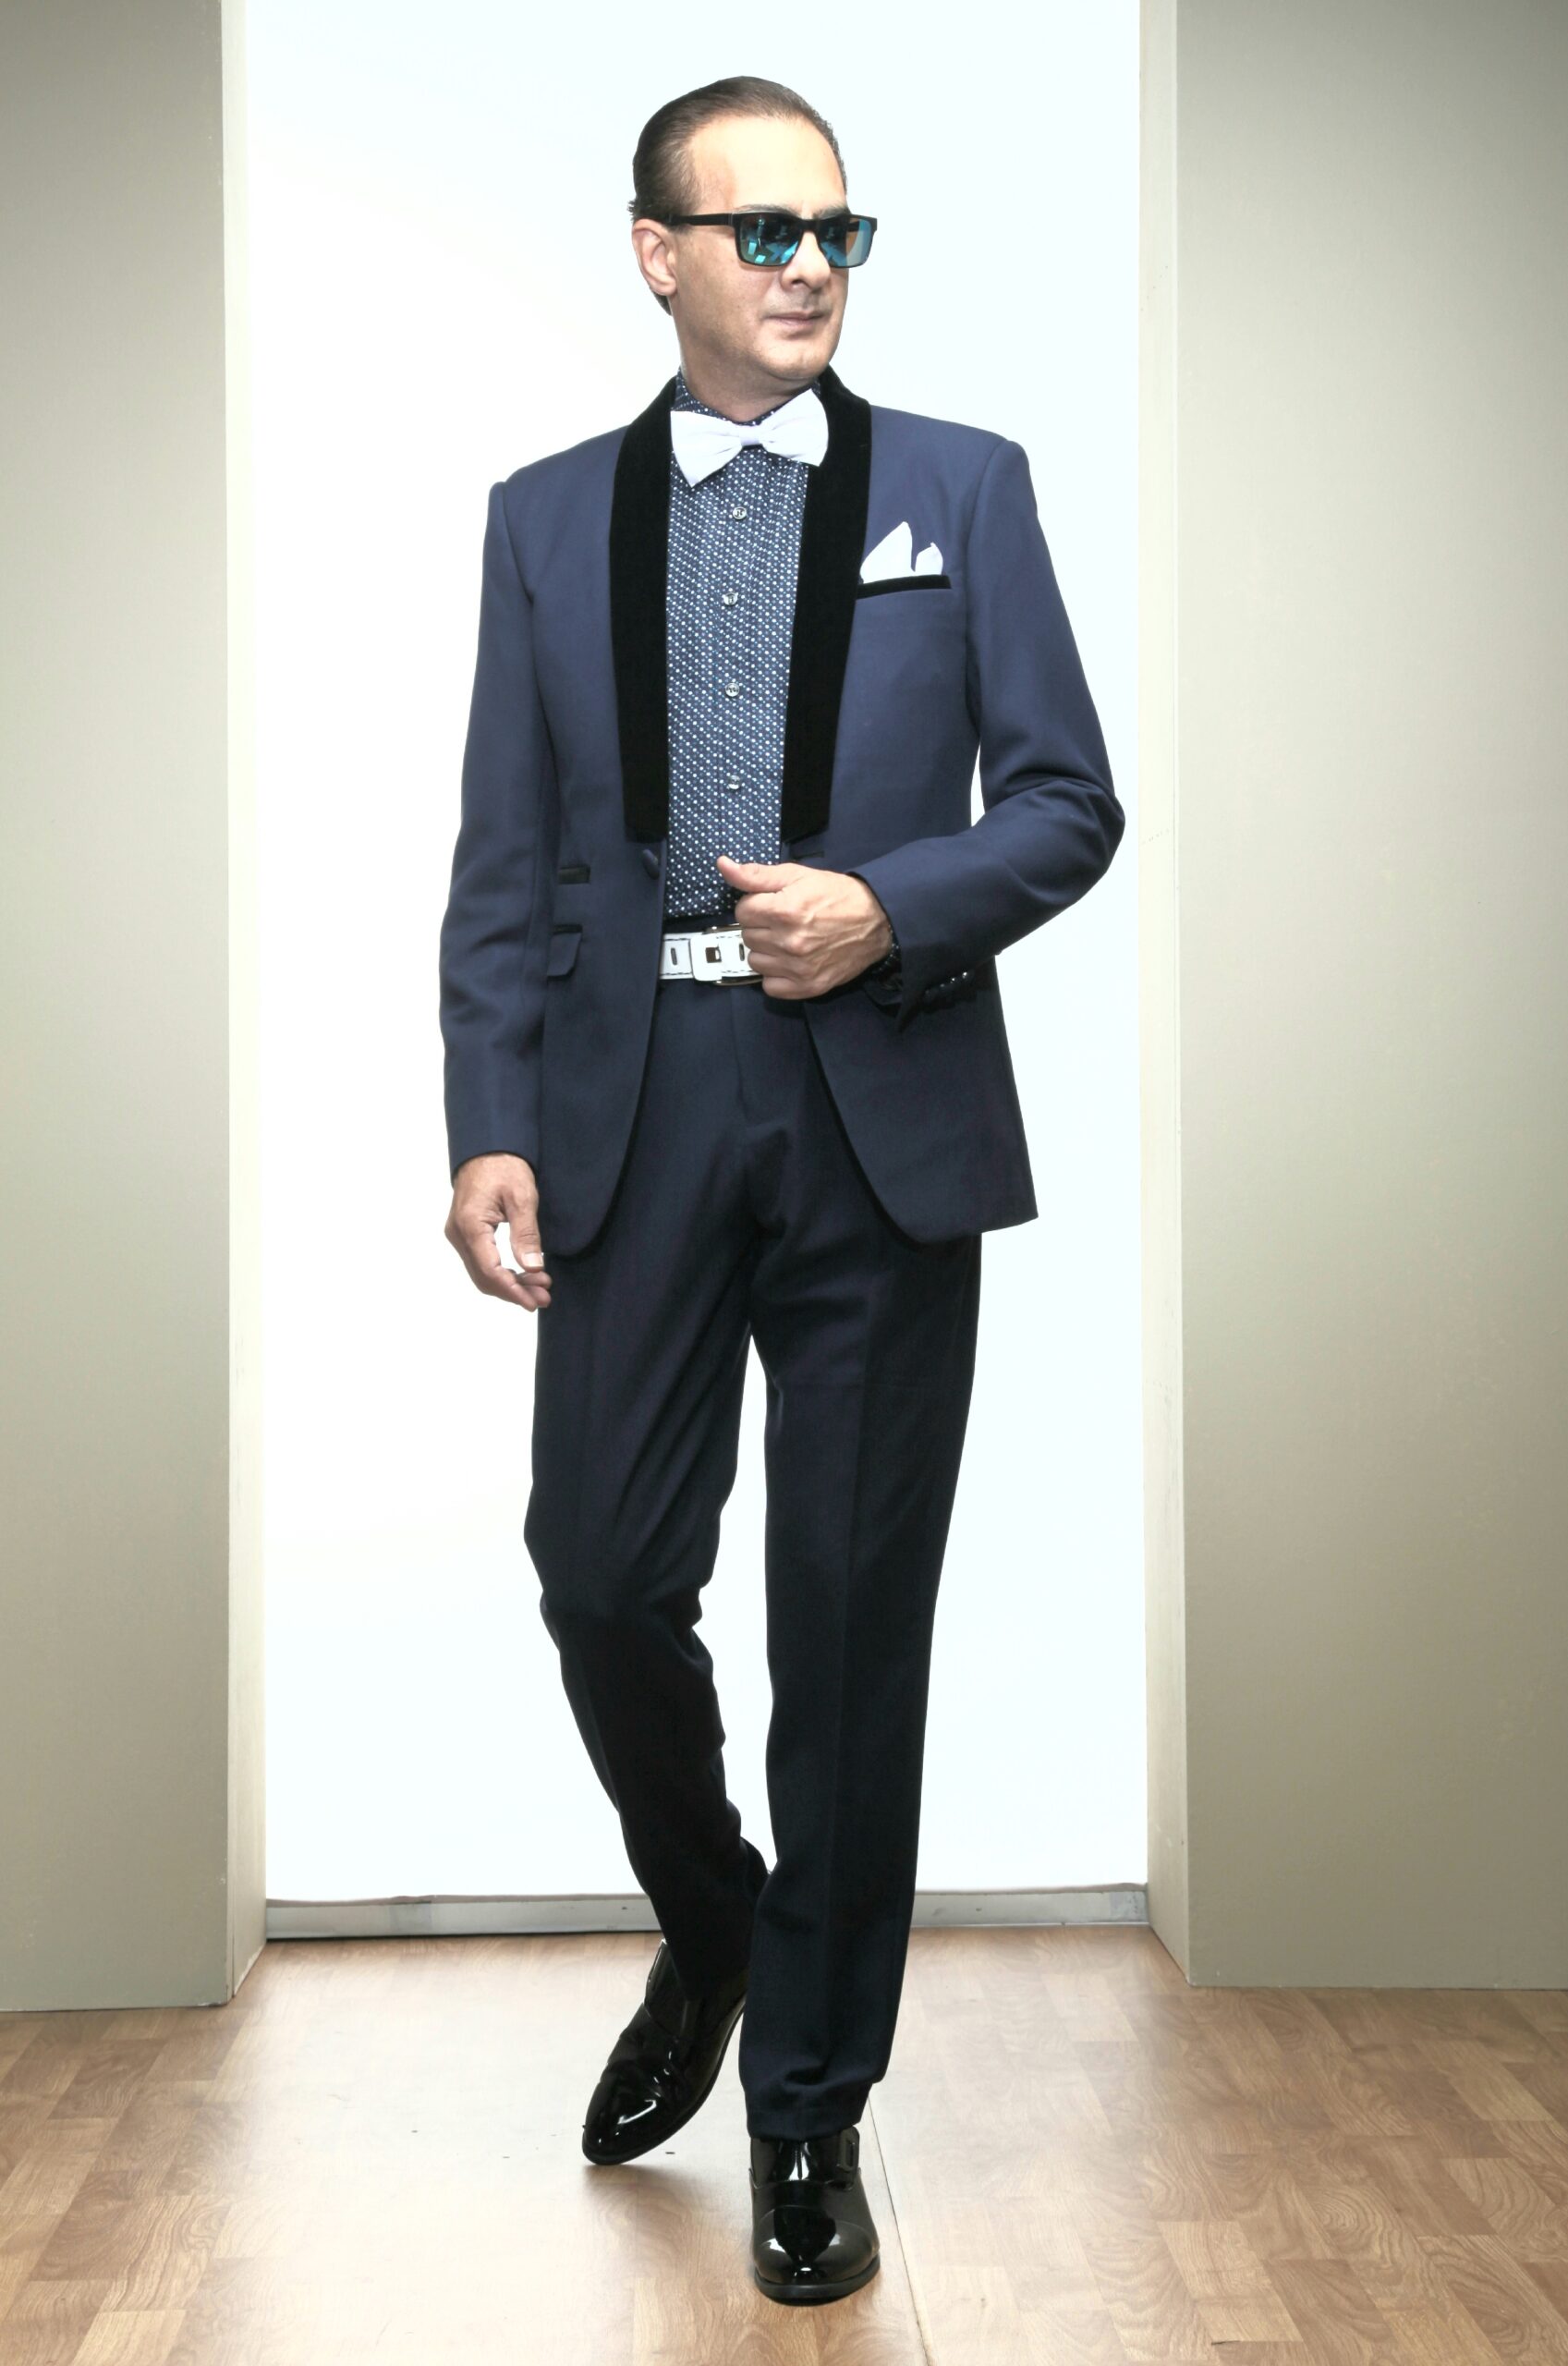 MST-5001-01-rent_rental_hire_tuxedo_suit_black_tie_suit_designer_suits_shop_tailor